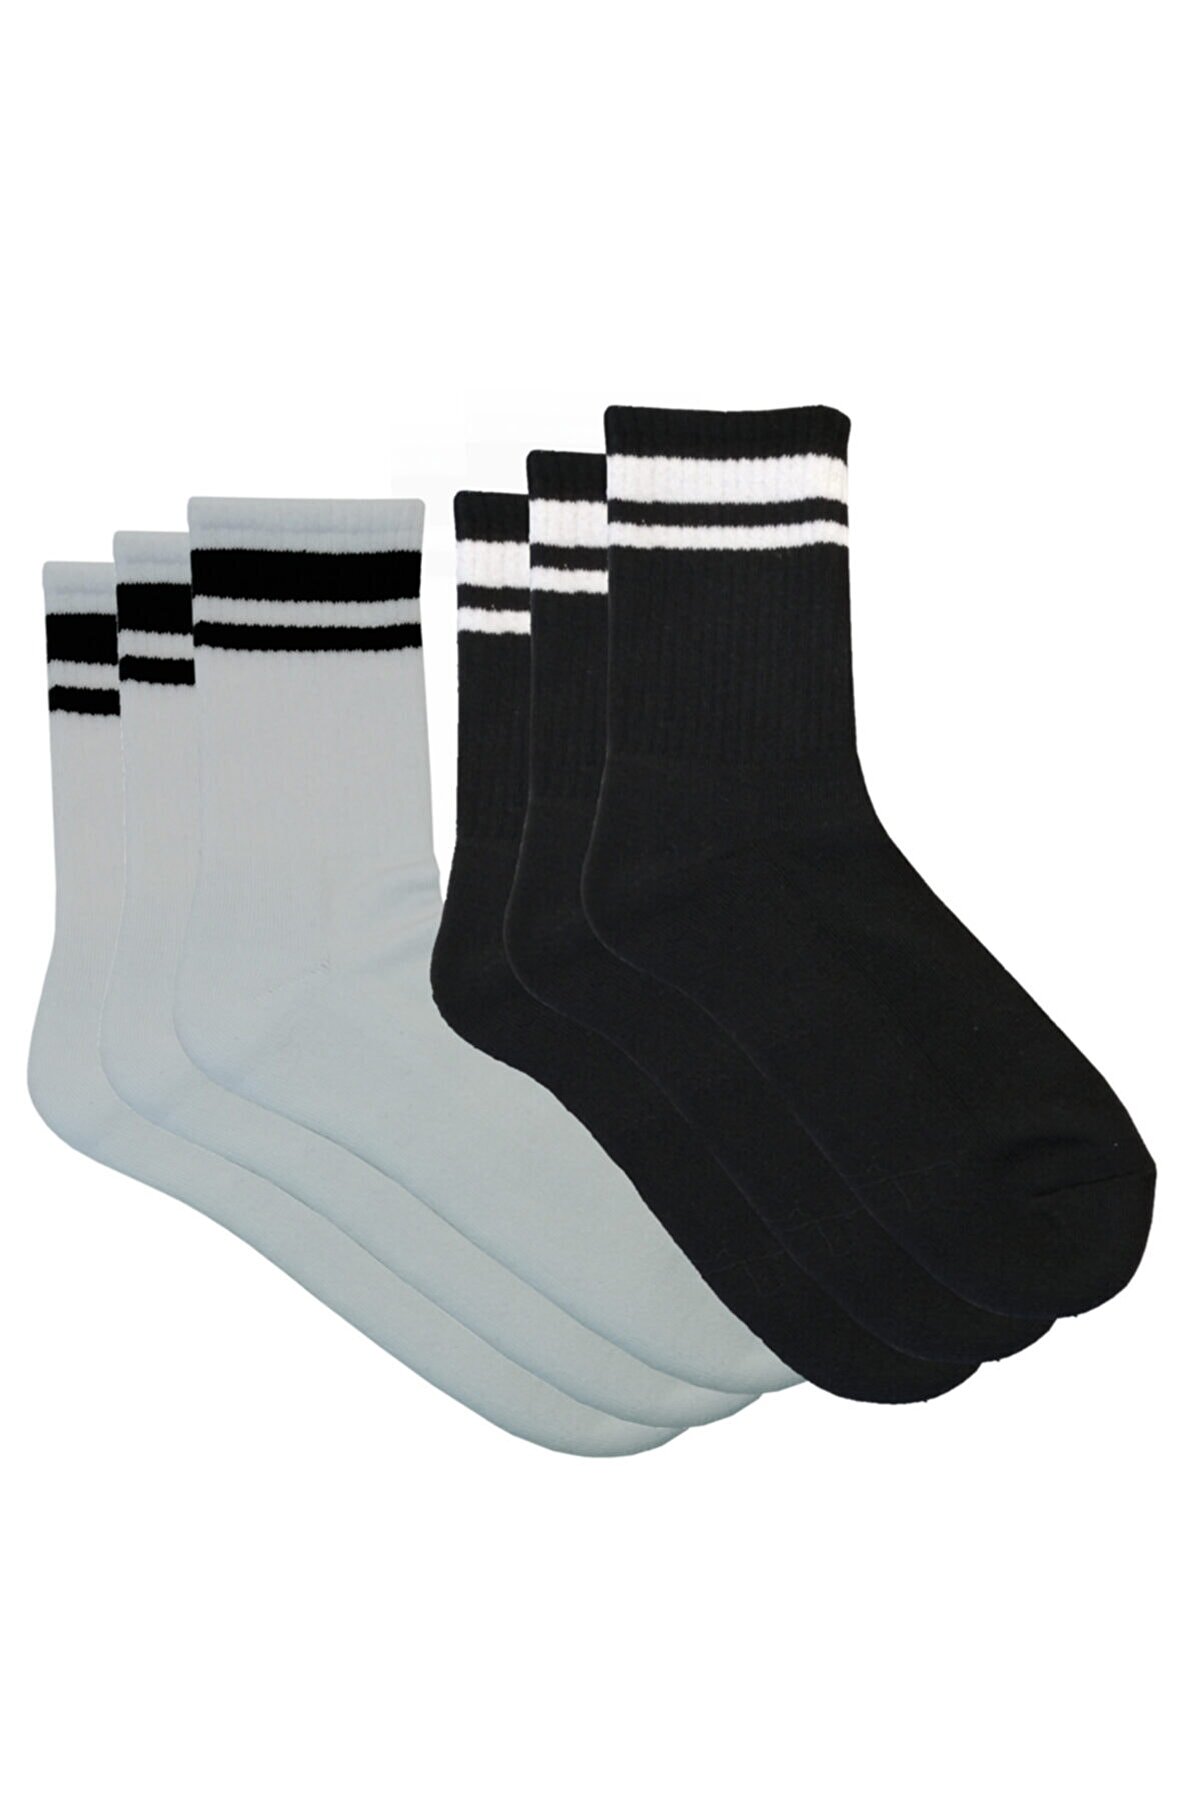 Yago yakışıyo Unisex Spor Çorabı 6 Lı Paket